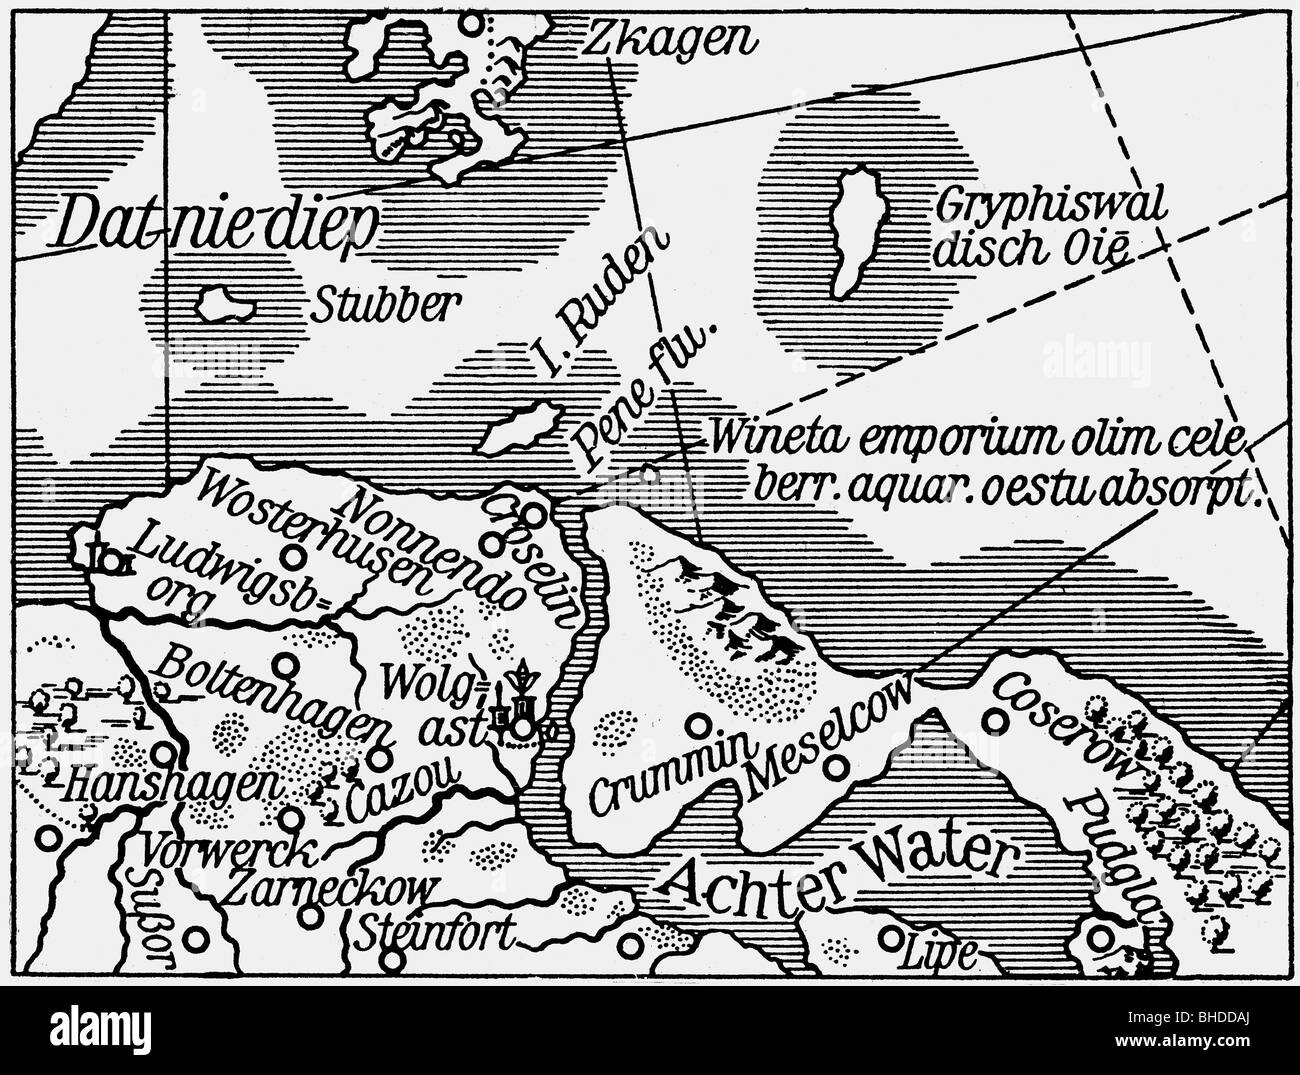 La cartographie, les cartes, l'Europe centrale, l'Allemagne, l'Cispommerania, Greifswald Bay, à l'emplacement supposé de Vineta, gravure sur cuivre, 1633, copyright de l'artiste n'a pas à être effacée Banque D'Images